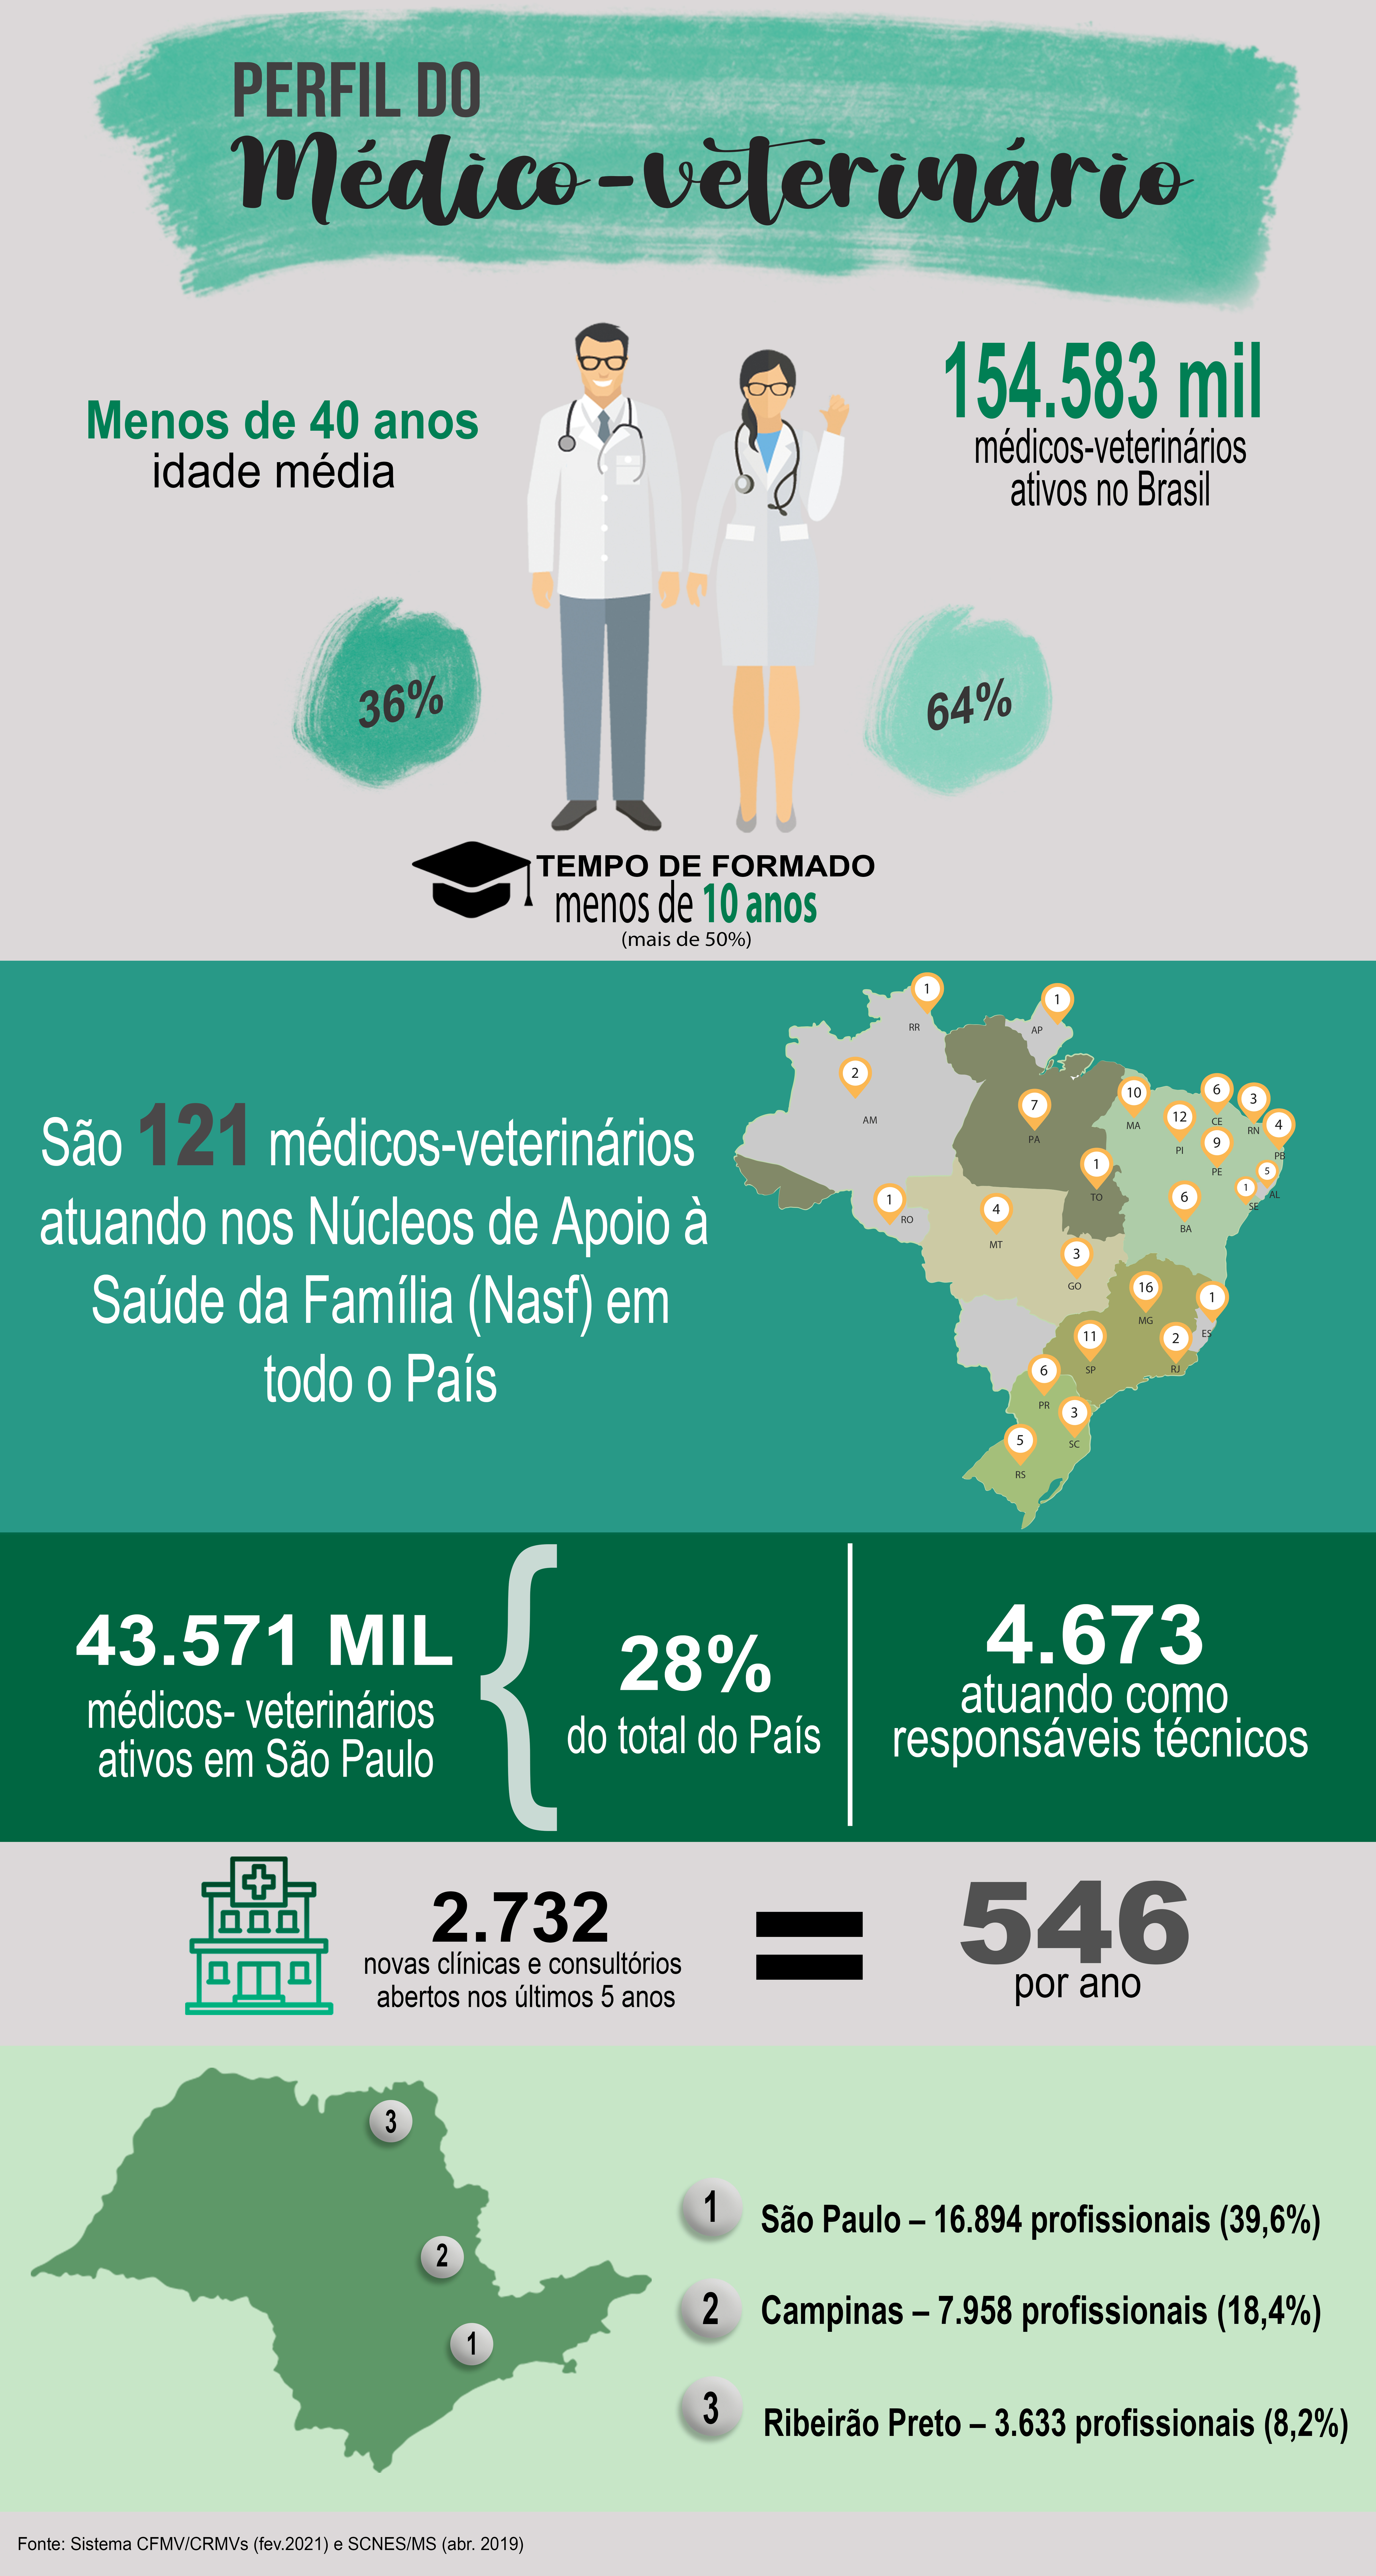 Perfil do Médico-veterinário 154.583 mil médicos-veterinários ativos no Brasil, sendo 36 % homens e 64% mulheres. 40 anos é a idade média e mais de 50% dos profissionais tem menos de 10 anos de formado. São 121 médicos-veterinários atuando nos Núcleos Ampliados de Saúde da Família (Nasf) em todo o País. Em um mapa do Brasil é indicada a quantidade de profissionais contratados para atuar no Nasf por Estado, sendo dois no Amazonas, um em Roraima, um em Rondônia, um no Amapá, sete em Mato Grosso, sete no Pará, um no Tocantins, três em Goiás, 10 no Maranhão, 11 no Piauí, seis no Ceará, três no Rio Grande do Norte, quatro na Paraíba, cinco em Alagoas, um no Sergipe, seis na Bahia, 16 em Minas Gerais, um no Espírito Santo, dois no Rio de Janeiro, 11 em São Paulo, seis no Paraná, três em Santa Catarina e cinco no Rio Grande do Sul. Há 43.571 mil médicos-veterinários ativos no estado de São Paulo, o que corresponde a 28% do total do País, 4.673 atuando como responsáveis técnicos. Em São Paulo foram abertos 2.732 novas clínicas e consultórios nos últimos cinco anos, 546 por ano. Em um mapa do estado de São Paulo são destacadas as regiões com maior número de médicos-veterinários. São elas: São Paulo, com 16.894 profissionais, 39,6% do total; Campinas, com 7.958 (18,4%); e Ribeirão Preto, com 3.633 (8,2%). Fonte: Sistema CFMV/CRMVs (fev. 2021) e SCNES/MS (abr. 2019).